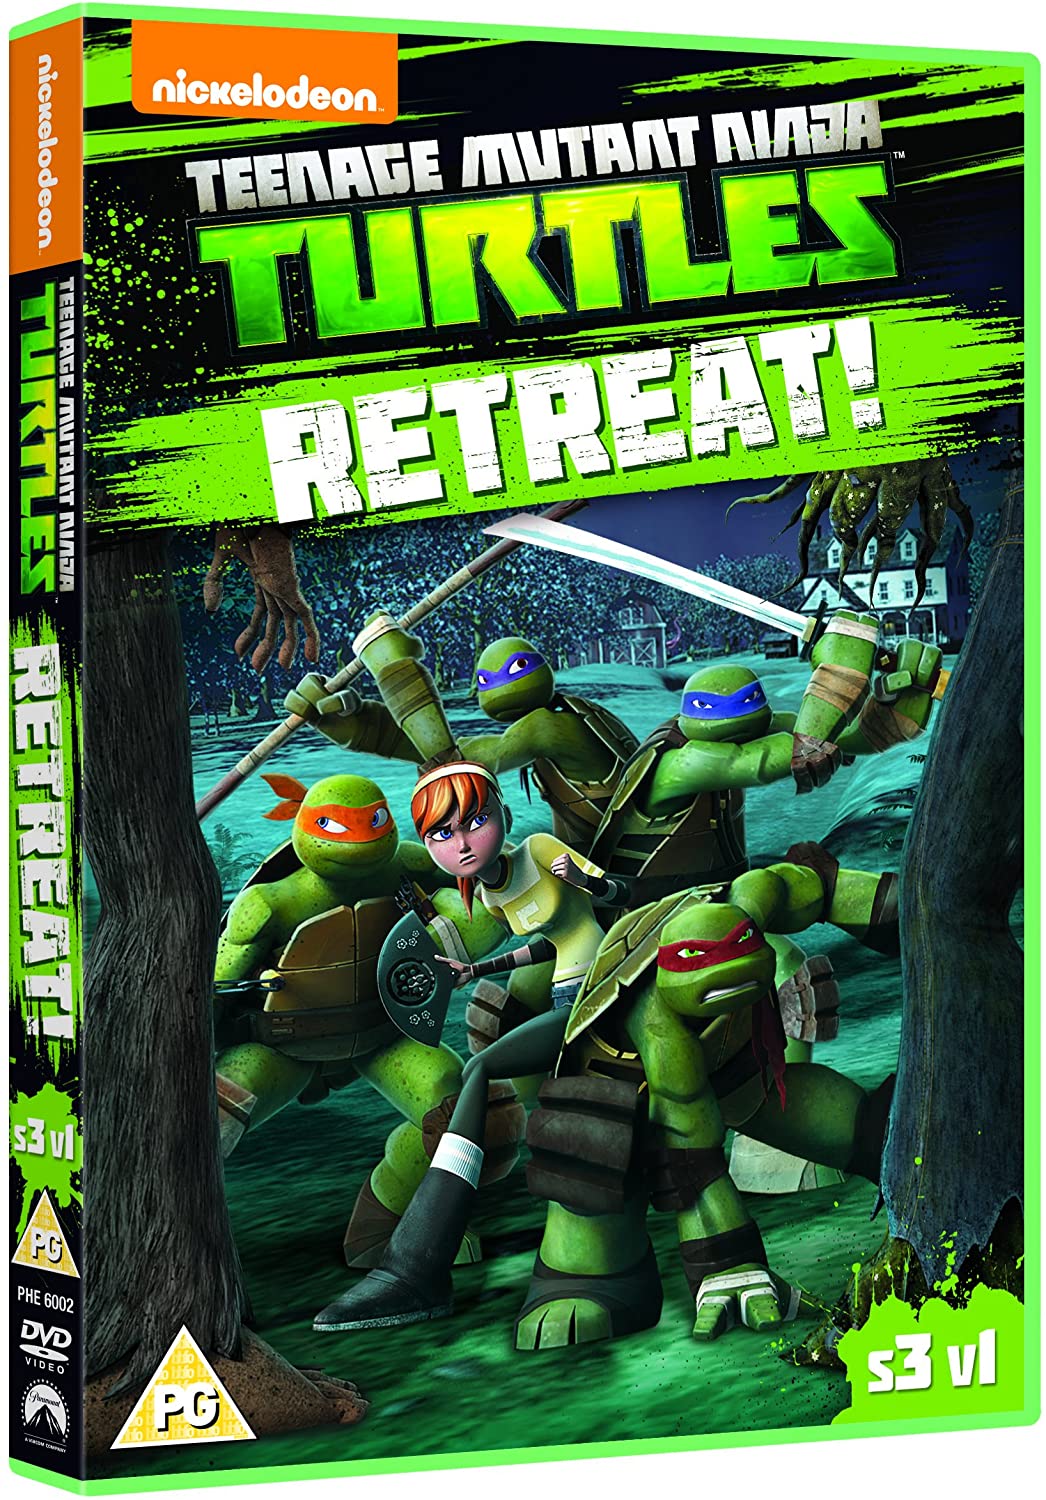 Teenage Mutant Ninja Turtles: Season 3, Vol. 1 - Retreat! - Action/Adventure [DVD]